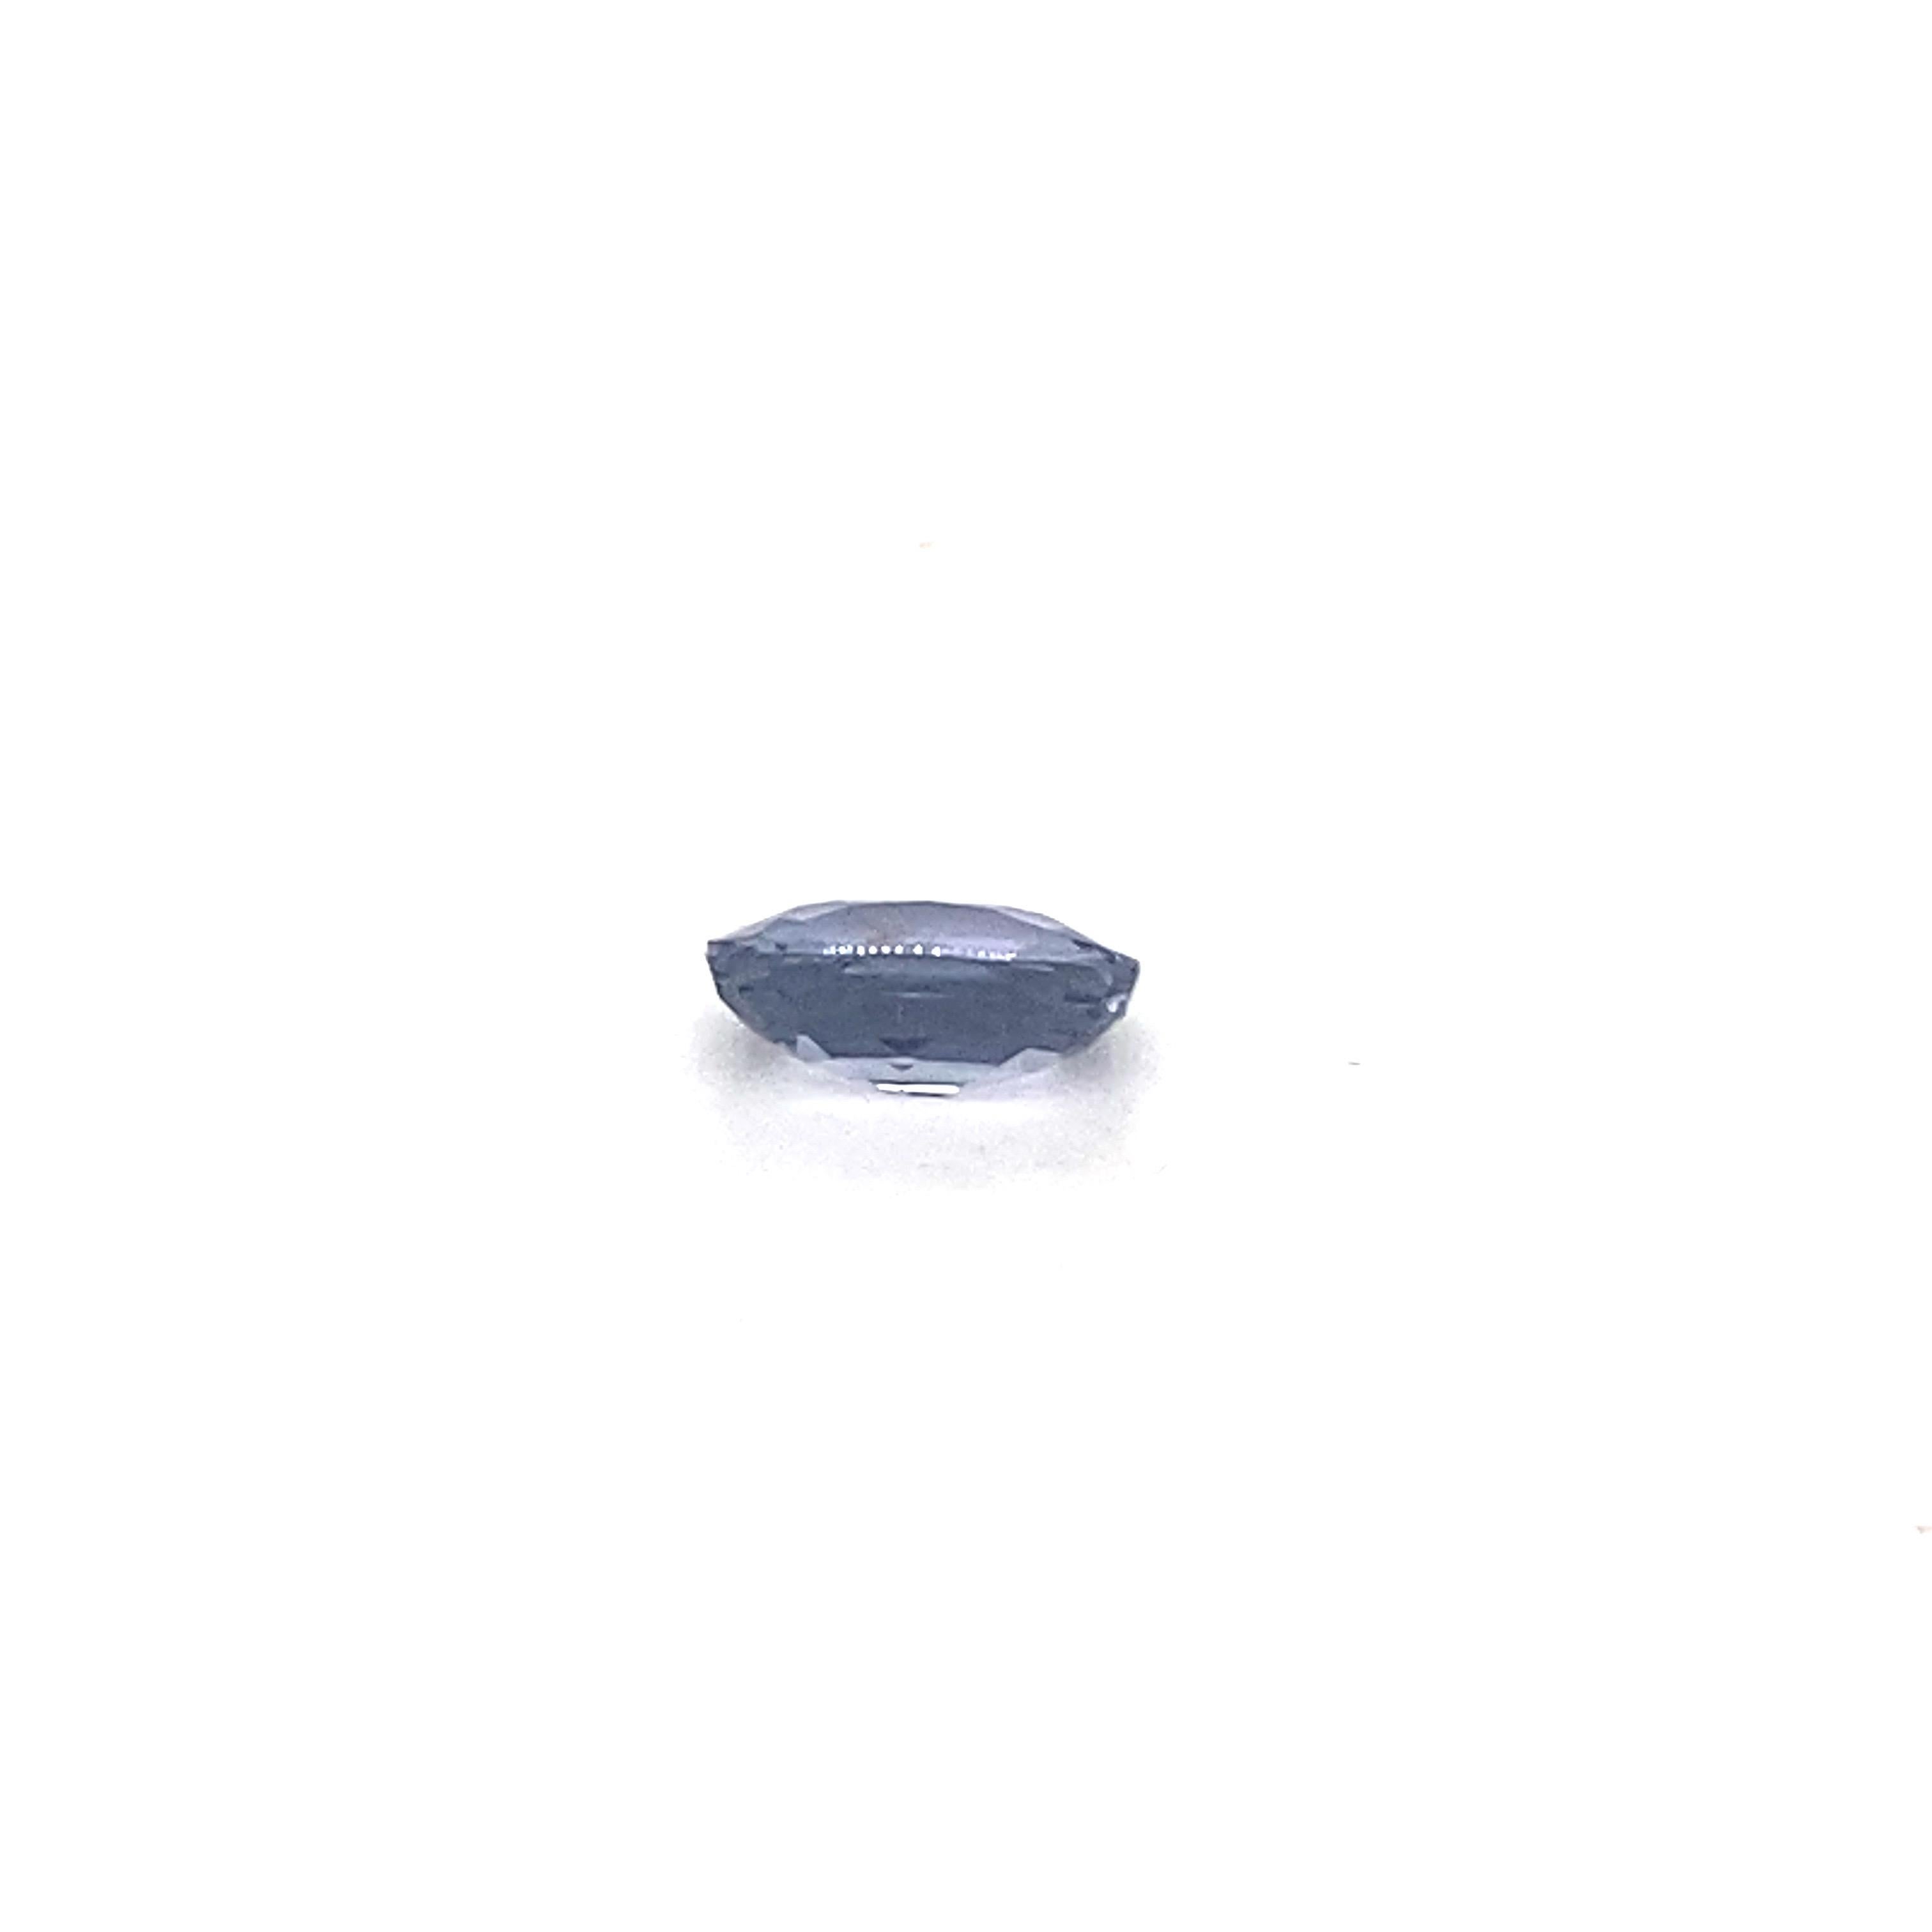 1.6 Carat Oval Shape Natural Violet Spinel Loose Gemstone For Sale 1